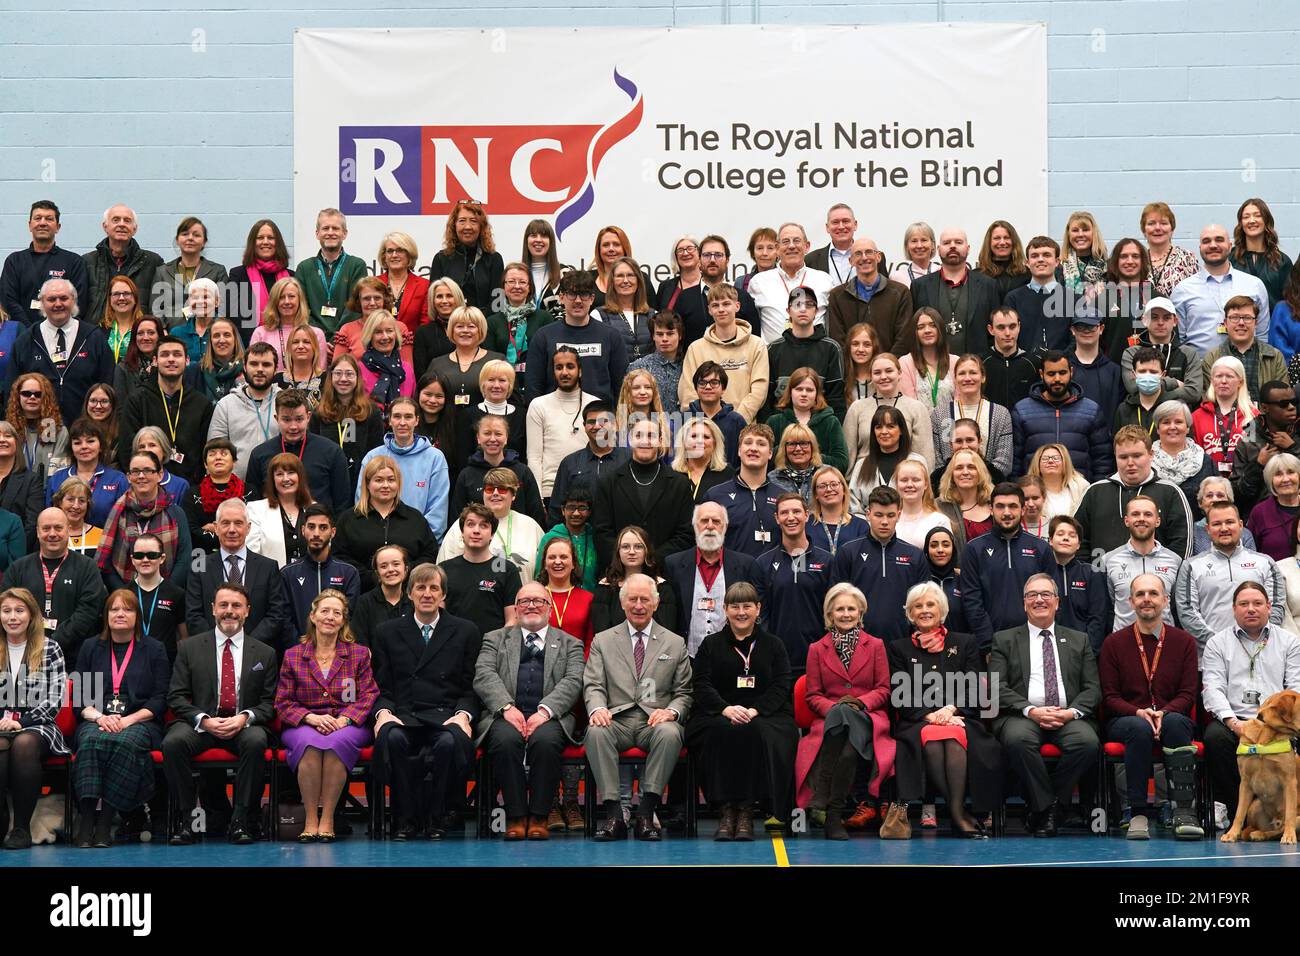 Le roi Charles III (centre inférieur) ayant une photo prise avec des étudiants, du personnel et des bénévoles lors de sa visite au Collège national royal pour les aveugles (RNC) à Hereford. Date de la photo: Lundi 12 décembre 2022. Banque D'Images